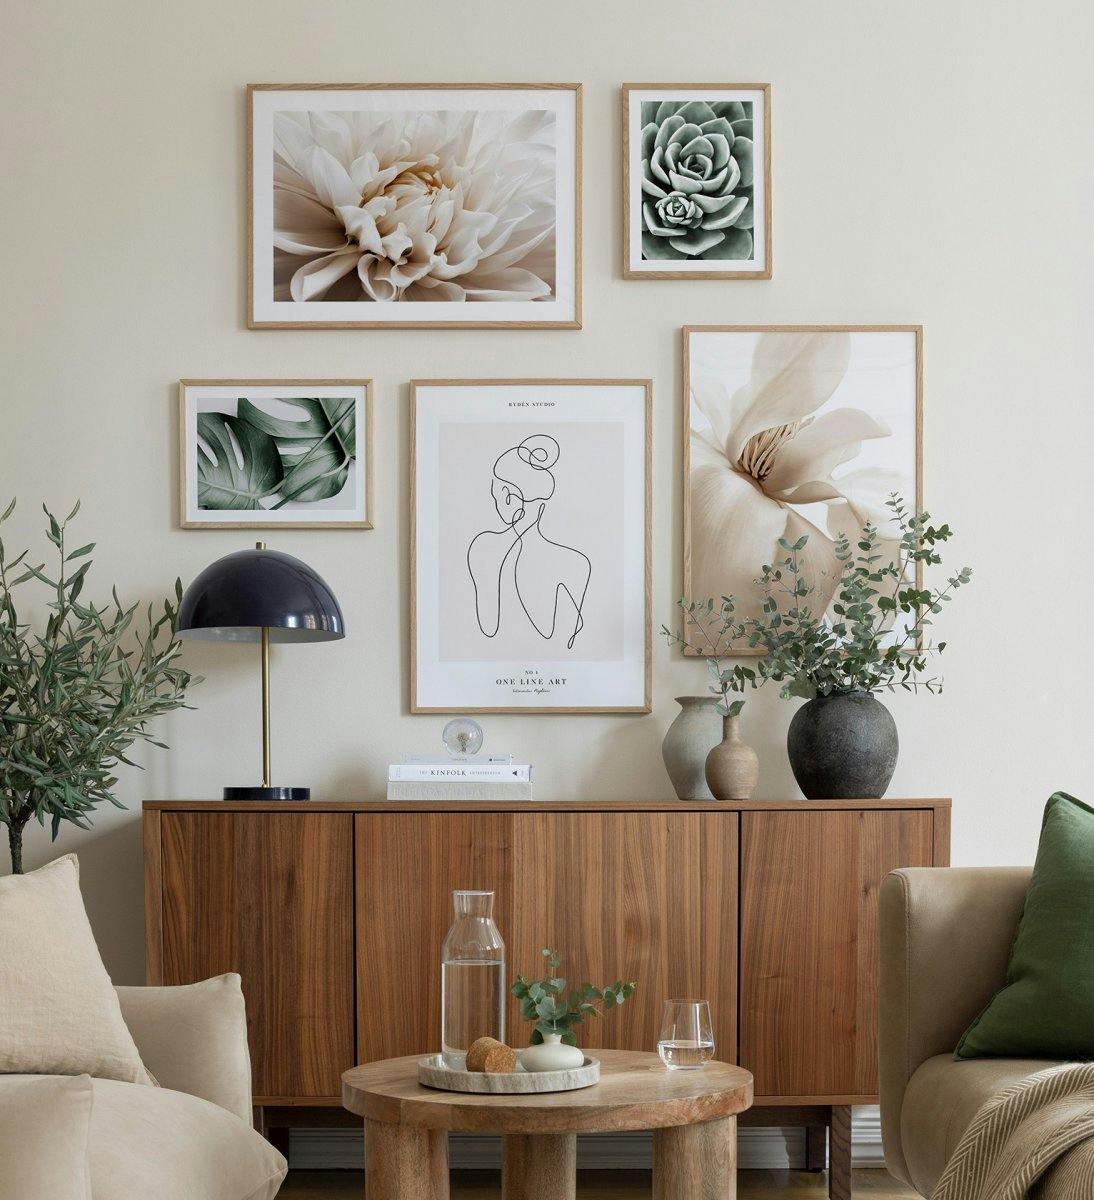 Décoration murale verte et beige avec des affiches florales et des lignes artistiques avec des cadres en chêne pour le salon